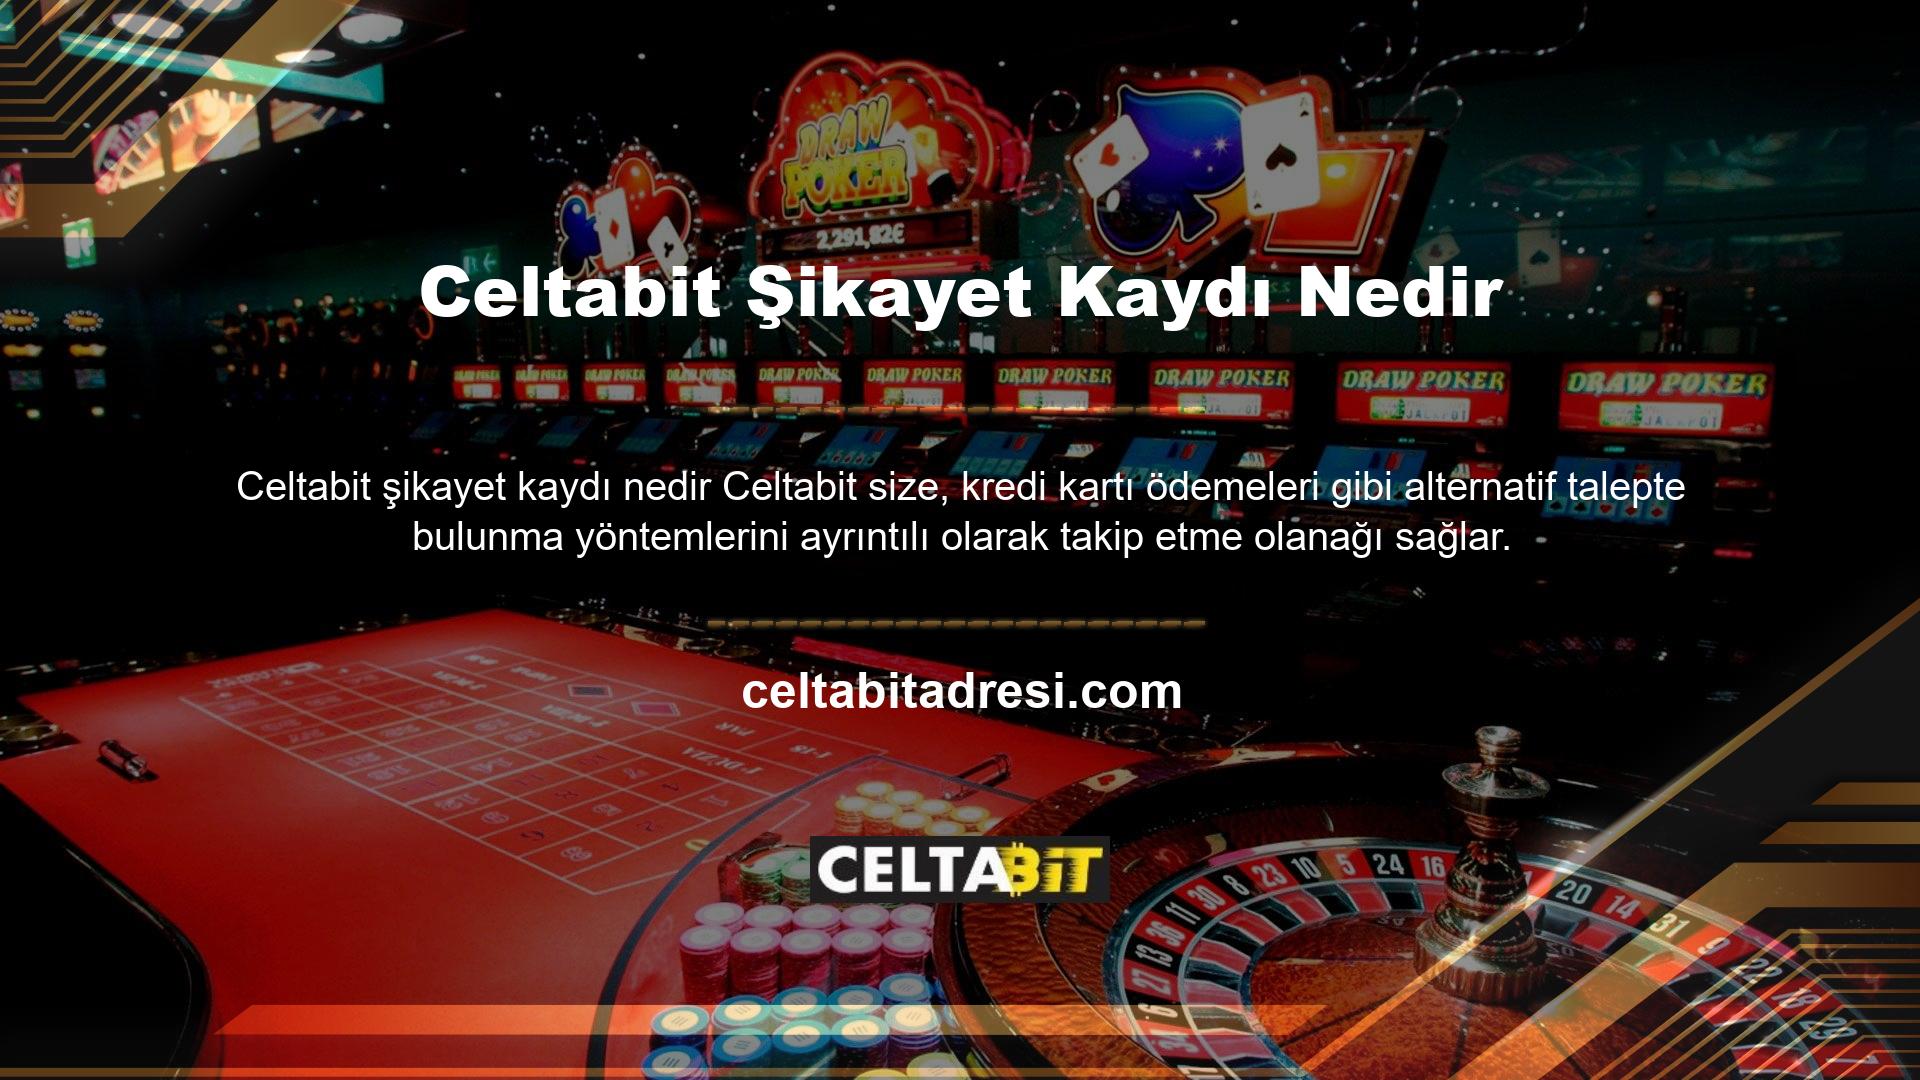 Talepler Celtabit, para yatırma sorunu olmayan sitelerden biridir